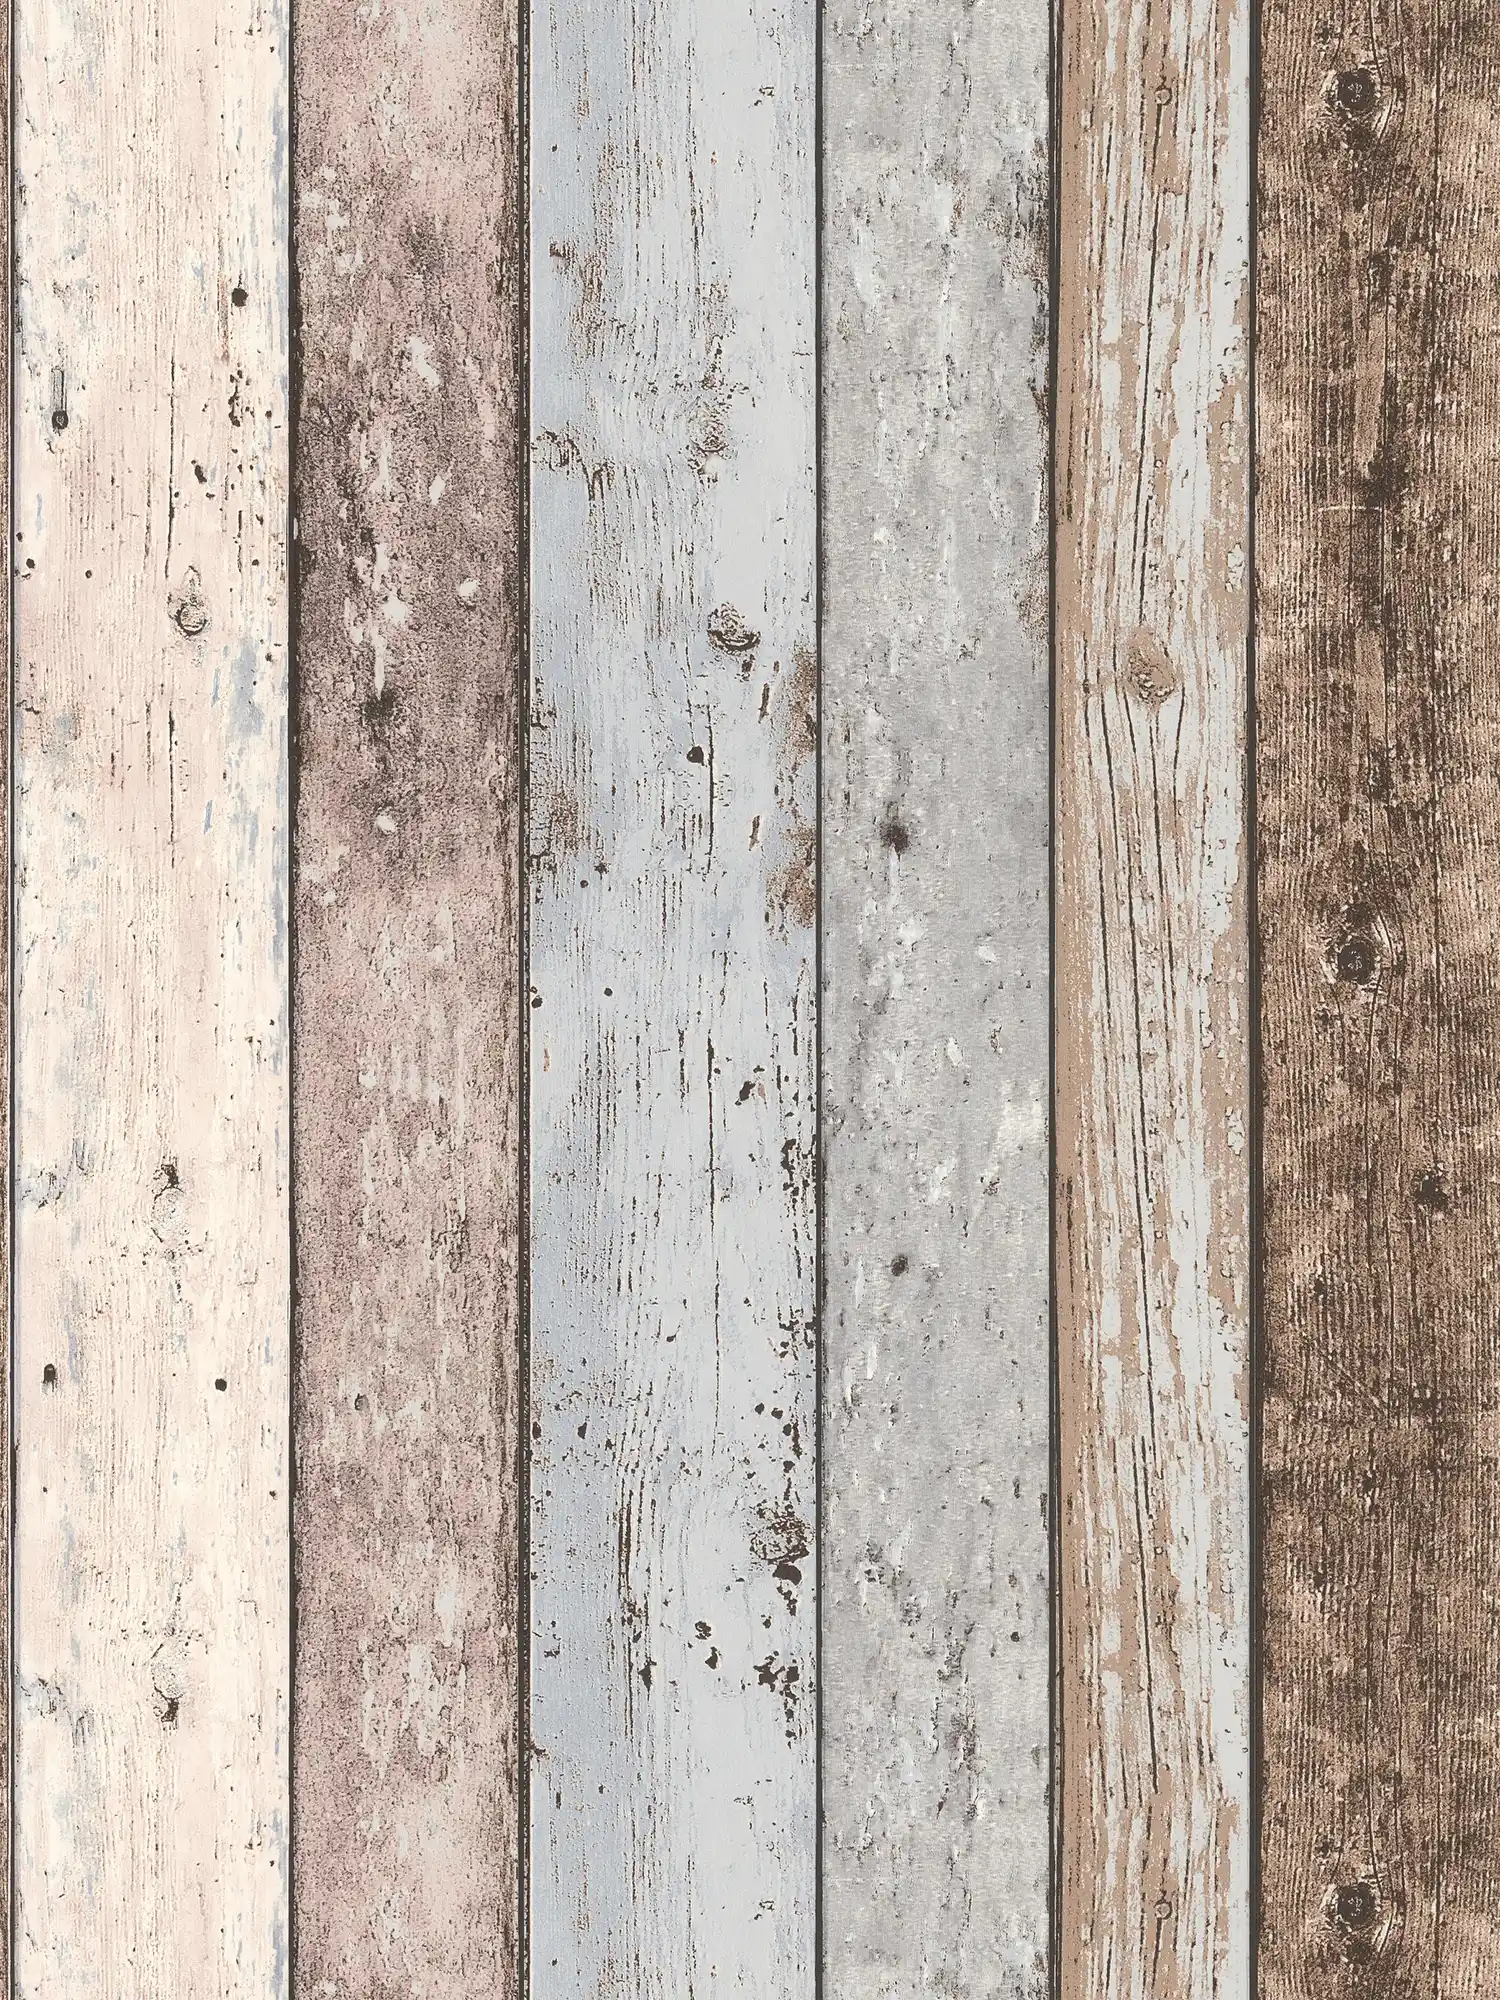 Wallpaper wood look rusitkale boards in vintage look - brown, blue, beige
